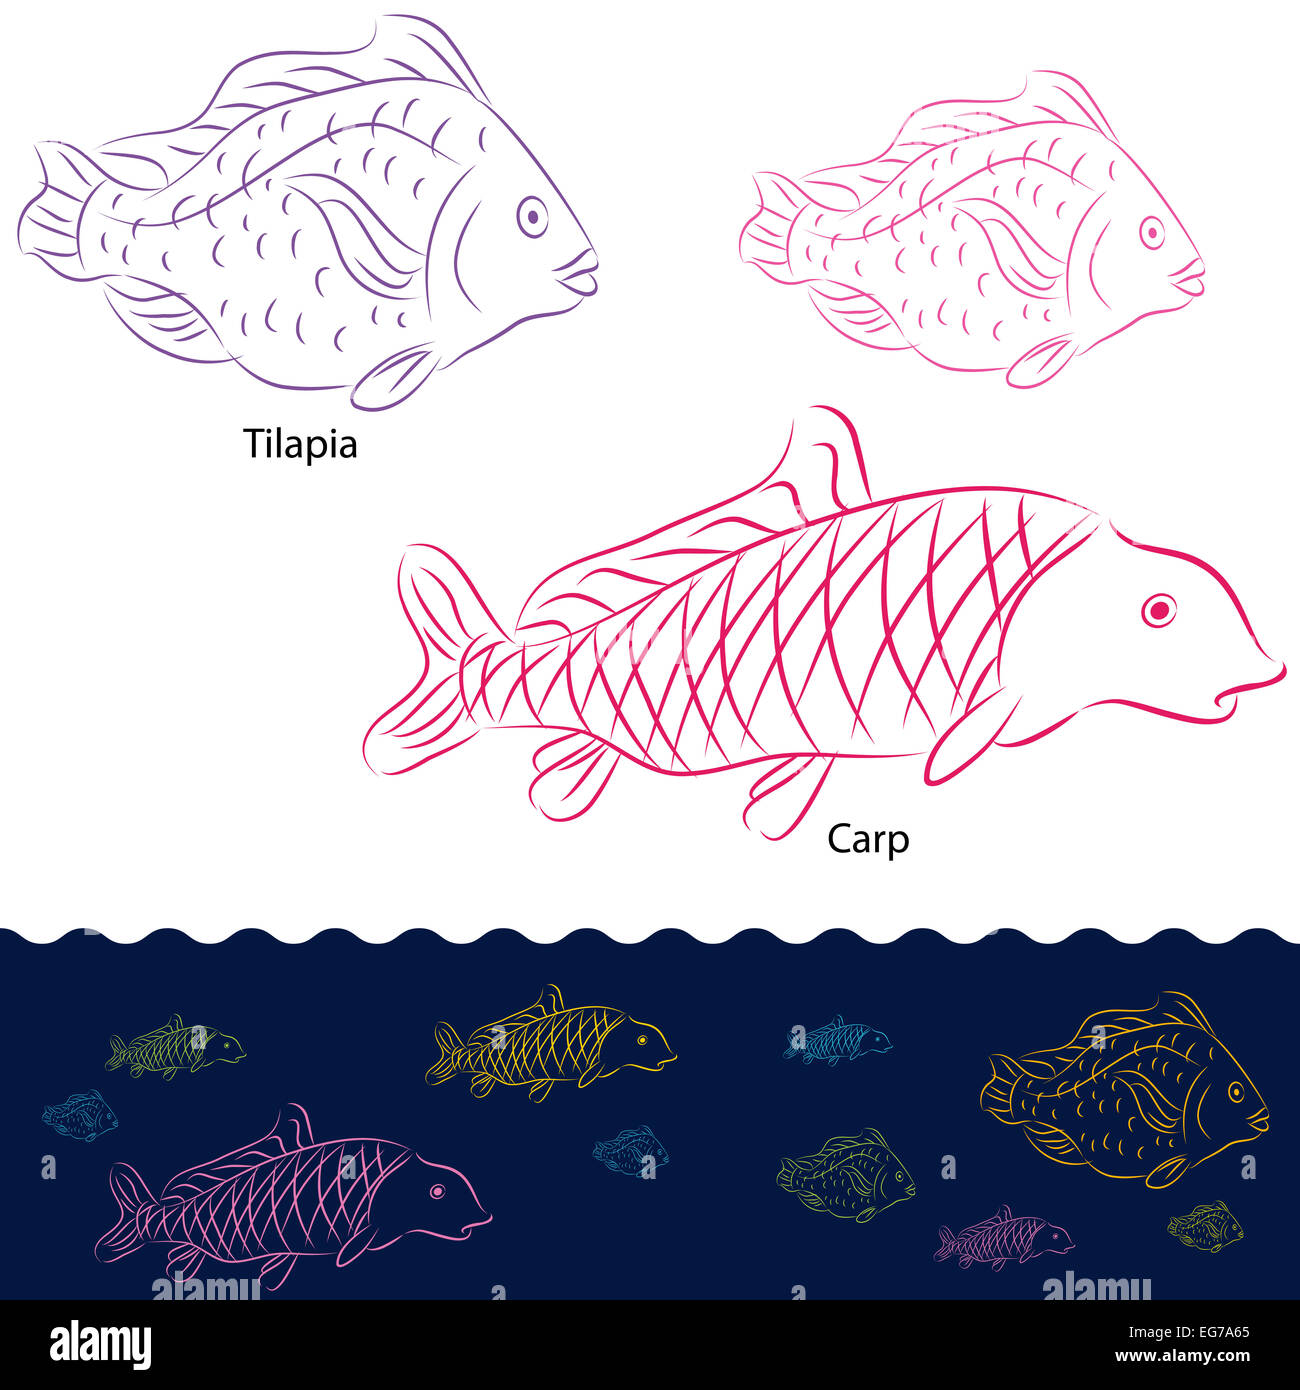 An image of a tilapia and carp fish set. Stock Photo